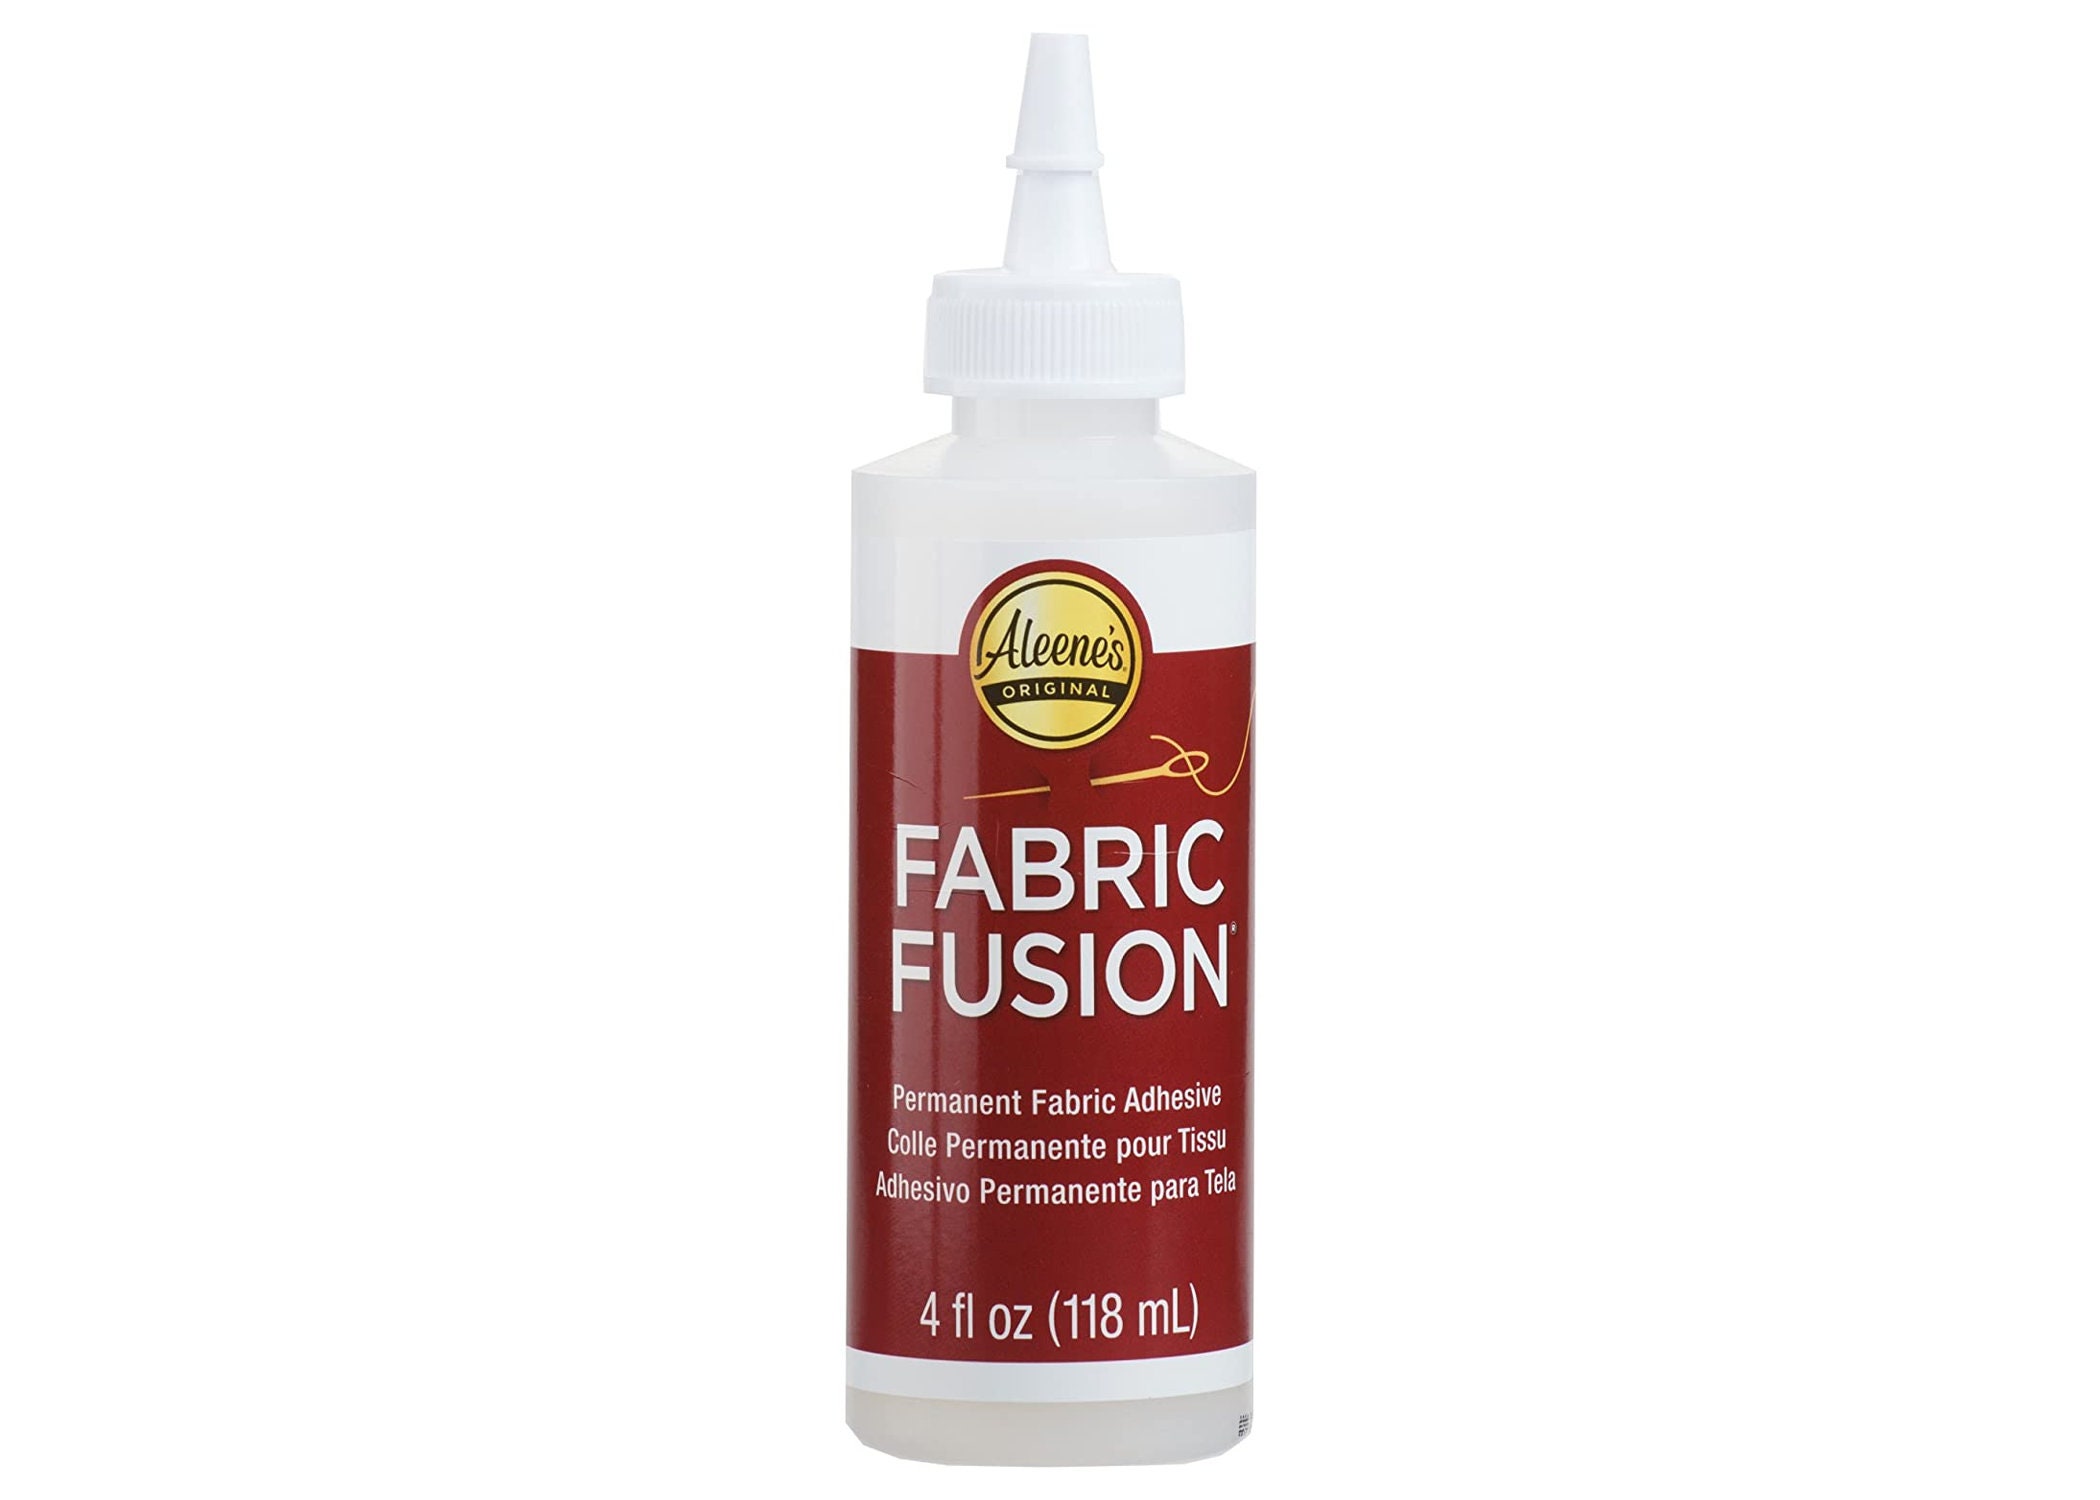 2oz Liquid Fusion - Premium Urethane Adhesive for Crafts